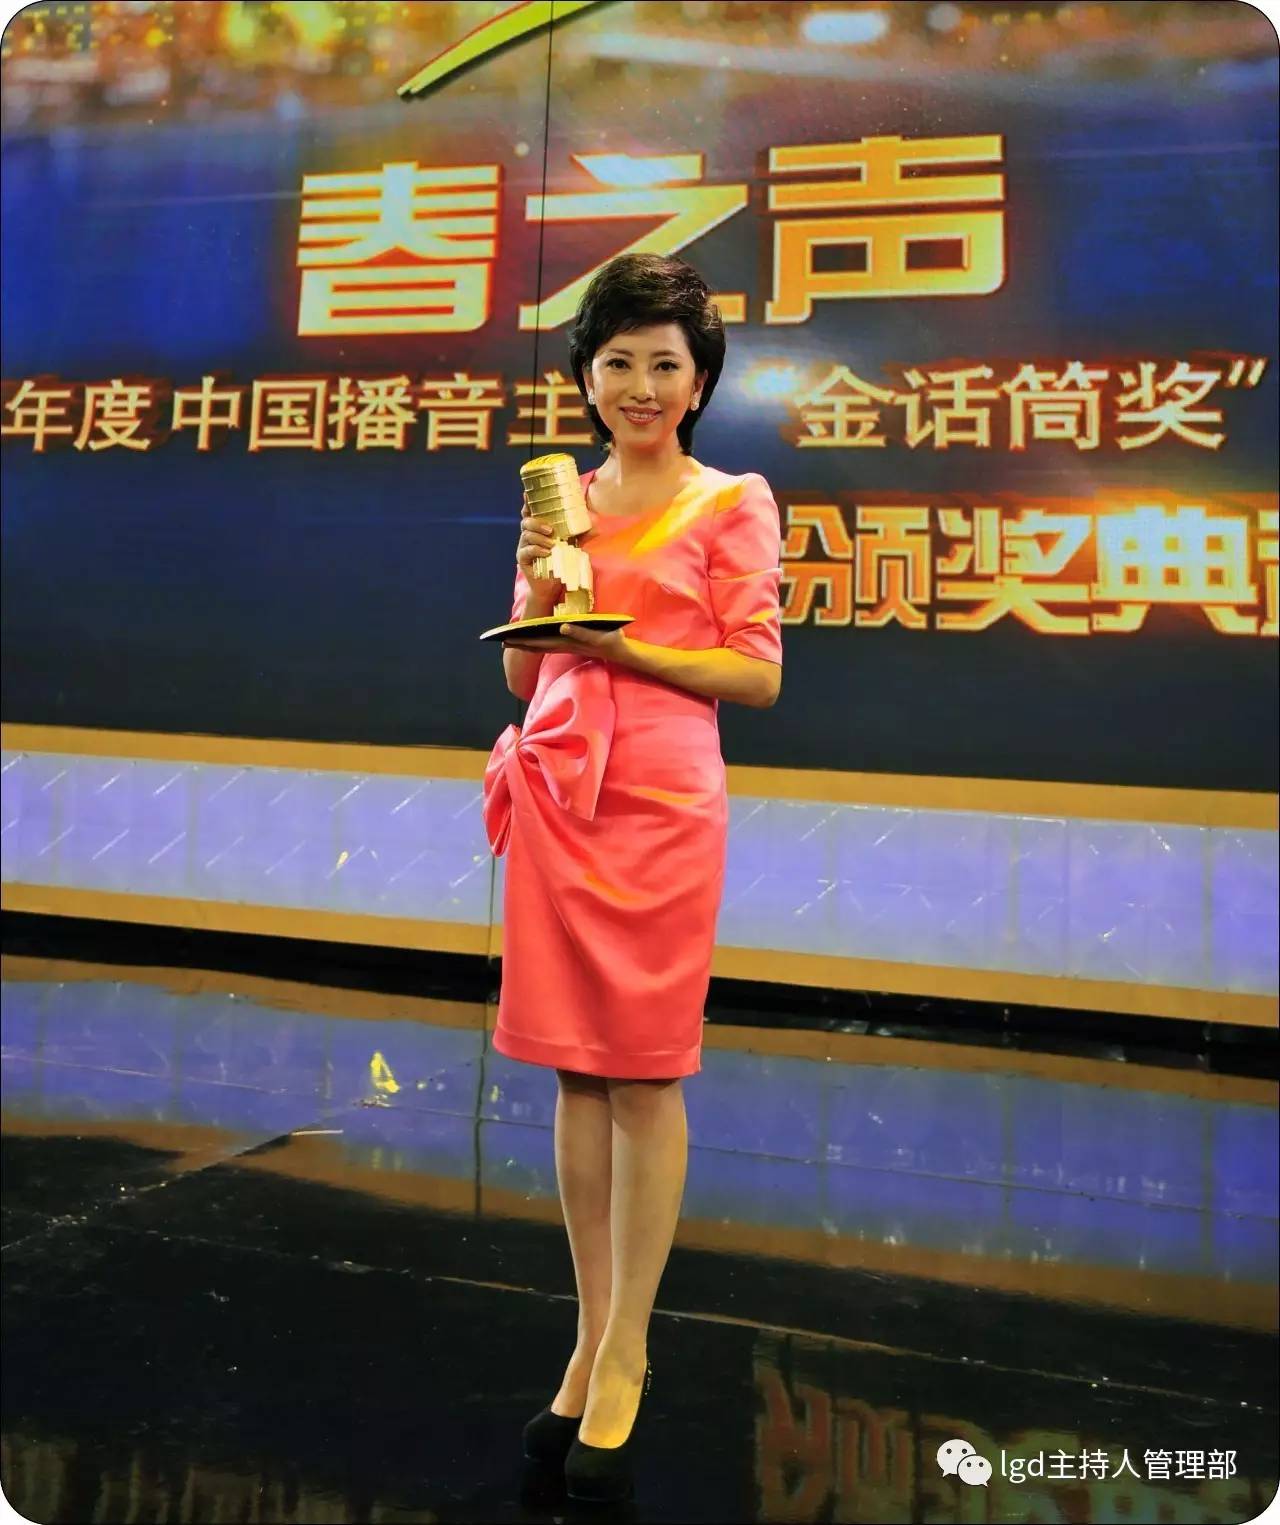 九次获得黑龙江省广播电视奖电视播音主持一等奖黑龙江卫视《新闻